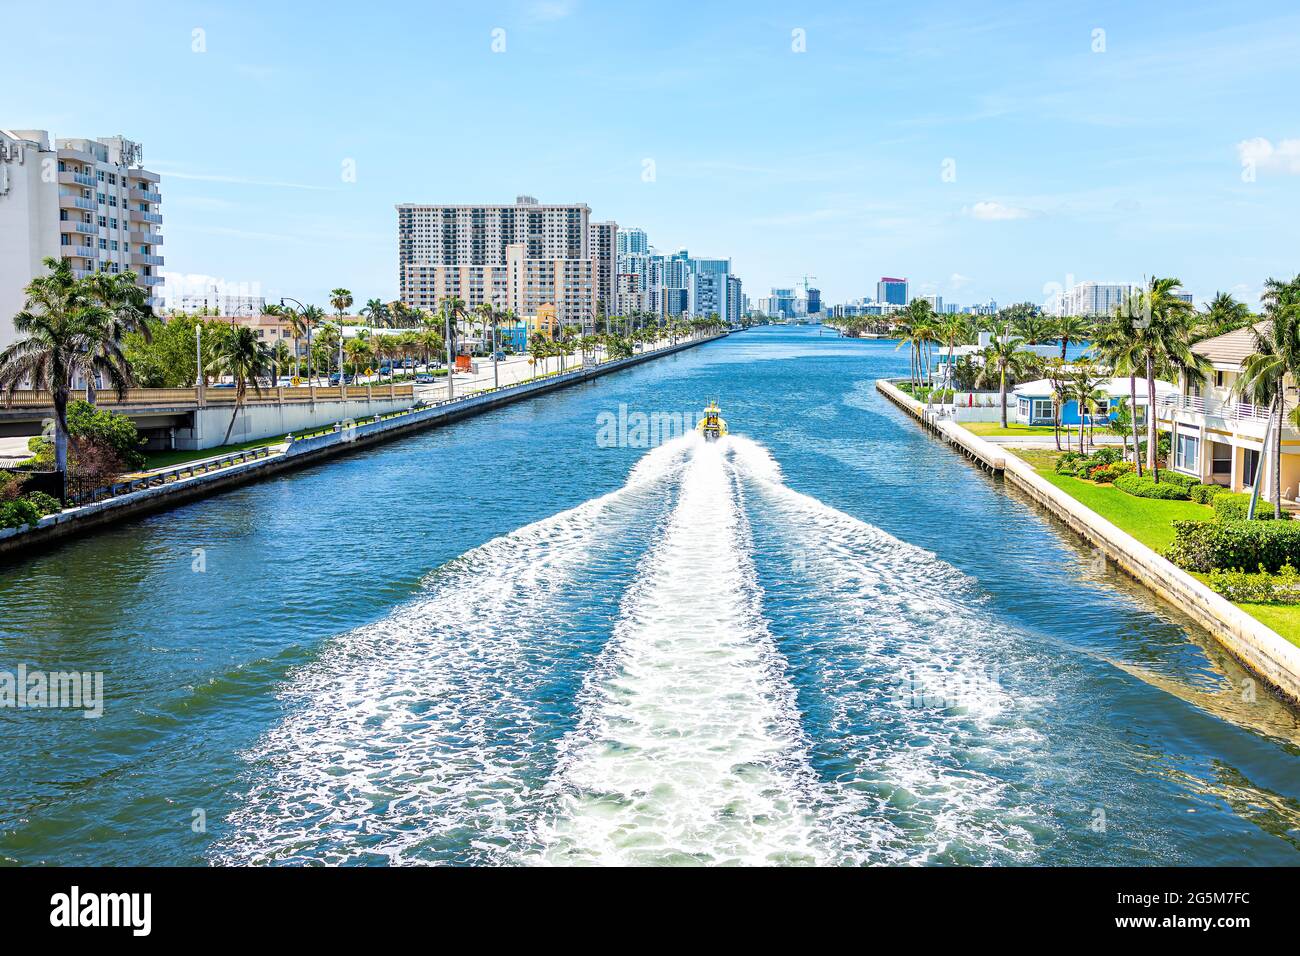 Hollywood, Floride dans la zone de Miami Beach avec paysage urbain de gratte-ciels résidentiels des bâtiments côtiers et au-dessus de la vue aérienne de la baie de la rivière Stranahan Banque D'Images